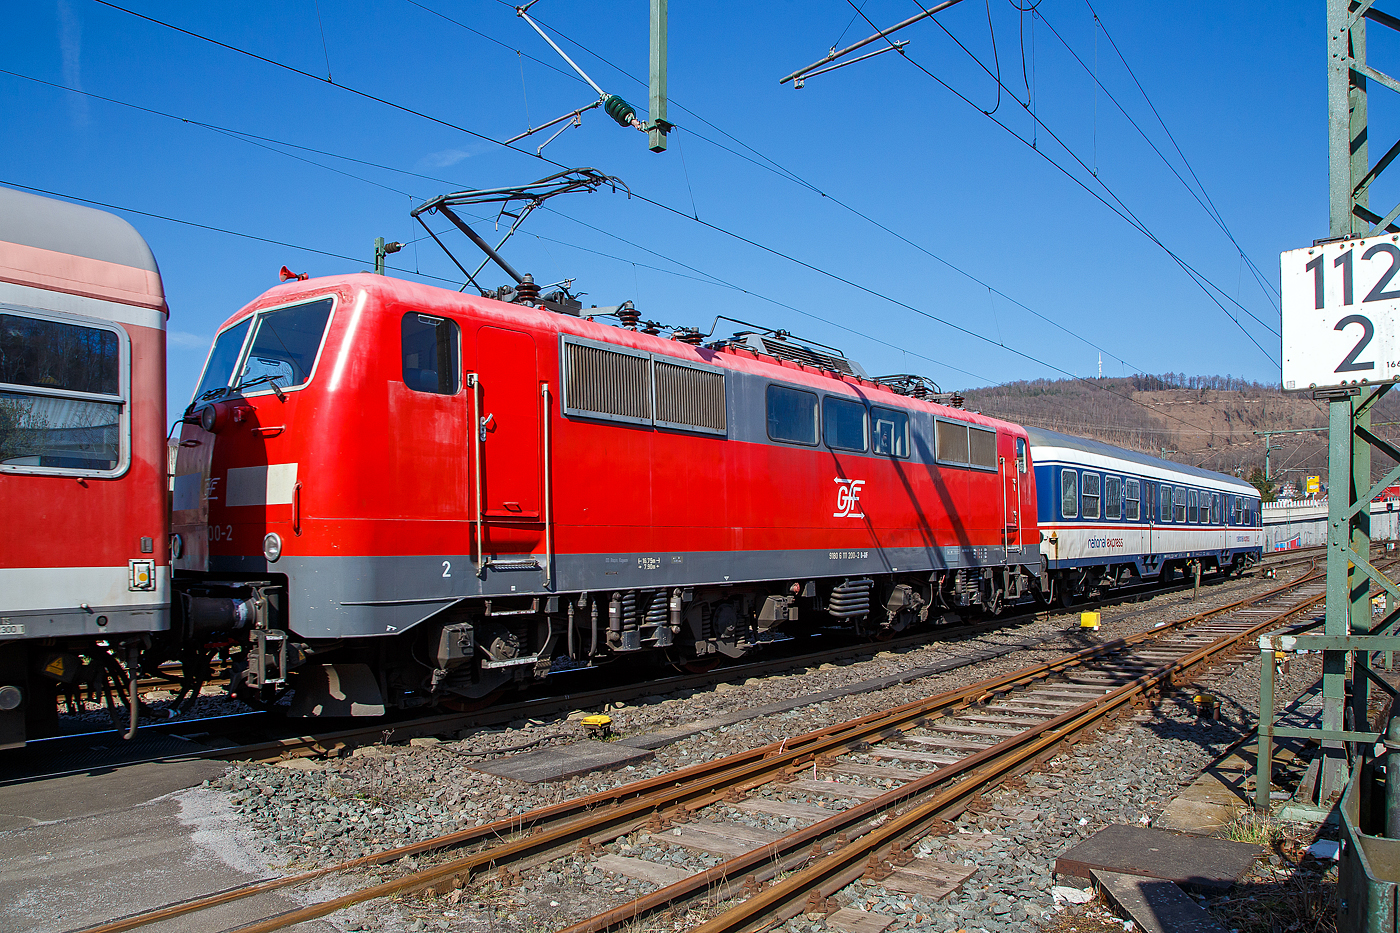 Die 111 200-2 (91 80 6111 200-2 D-GfF) der Gesellschaft für Fahrzeugtechnik mbH, eingereiht in einen National Express Personenzug am 24.03.2021 bei einer Zugdurchfahrt durch Niederschelden, hier passiert er gerade den Bü 343 (Km 112,183 der Siegstrecke KBS 460).

Die Lok wurde1982 von Krupp unter der Fabriknummer 5511gebaut, der elektrische Teil wurde von AEG unter der Fabriknummer 9026 geliefert. Bis 2019 war die Lok bei der DB Regio.
